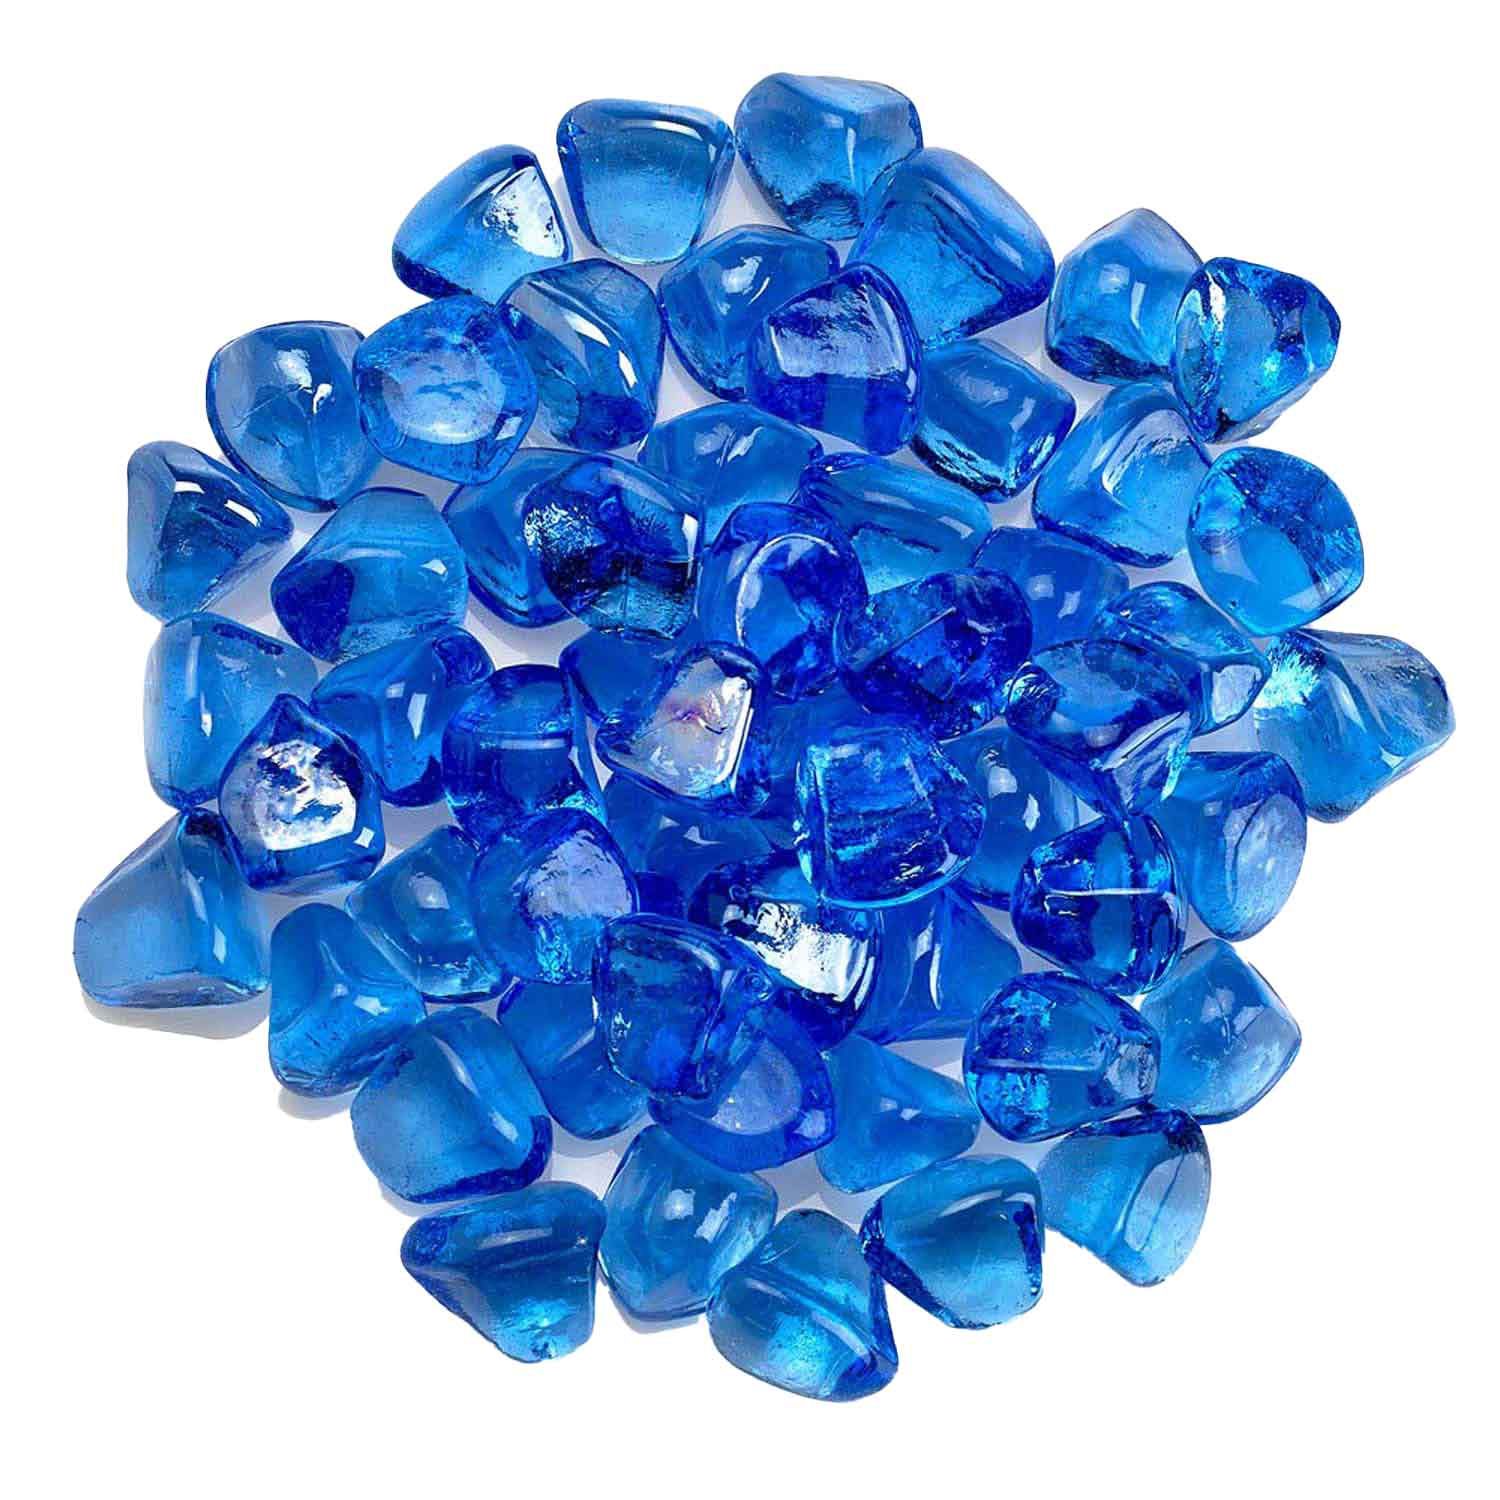 Aqua Blue Luster Fire Beads - Fire Glass / American Fireglass